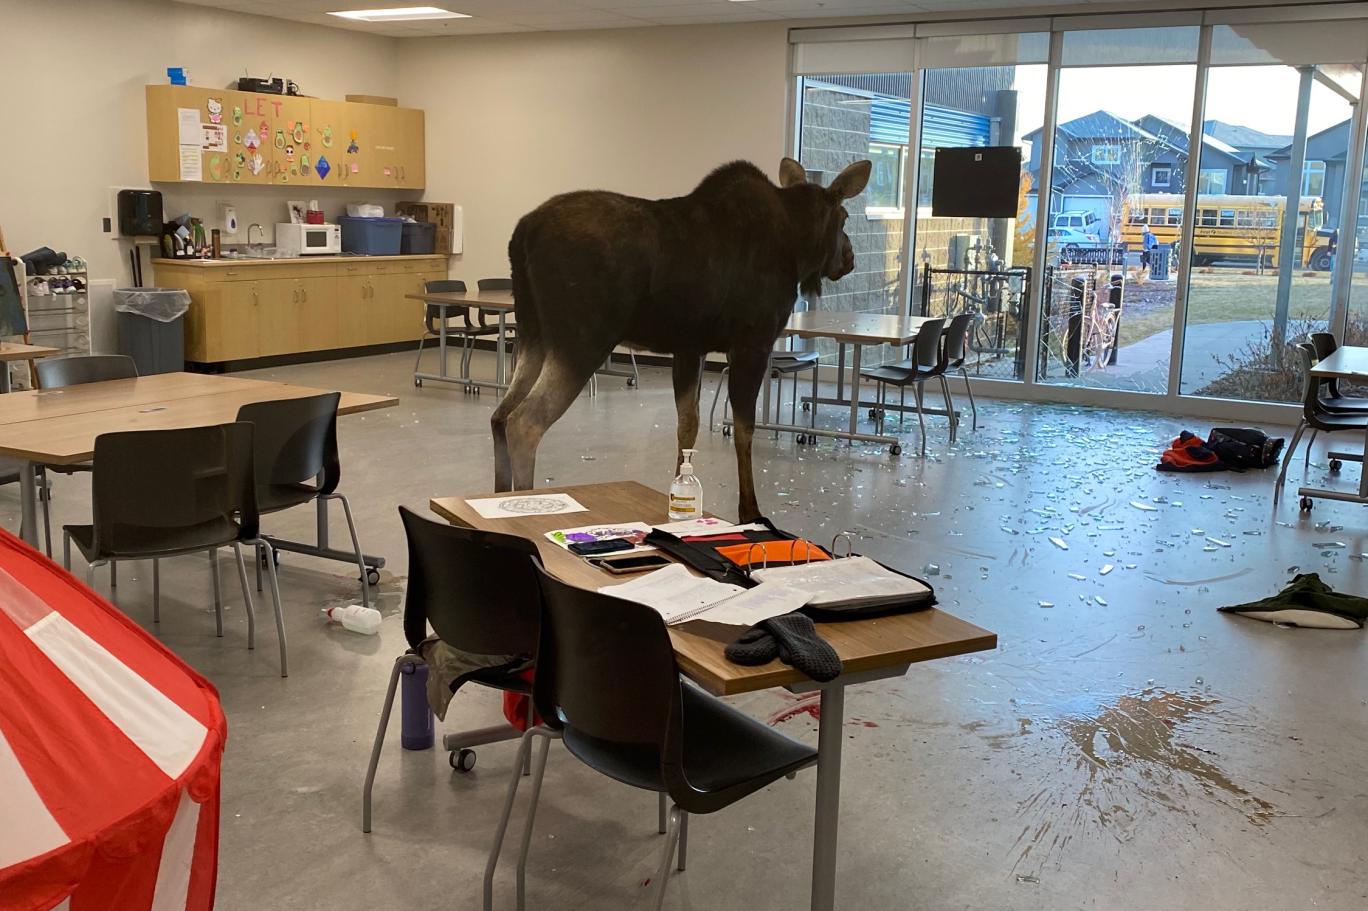 Camı parçalayan geyik sınıfa girdi